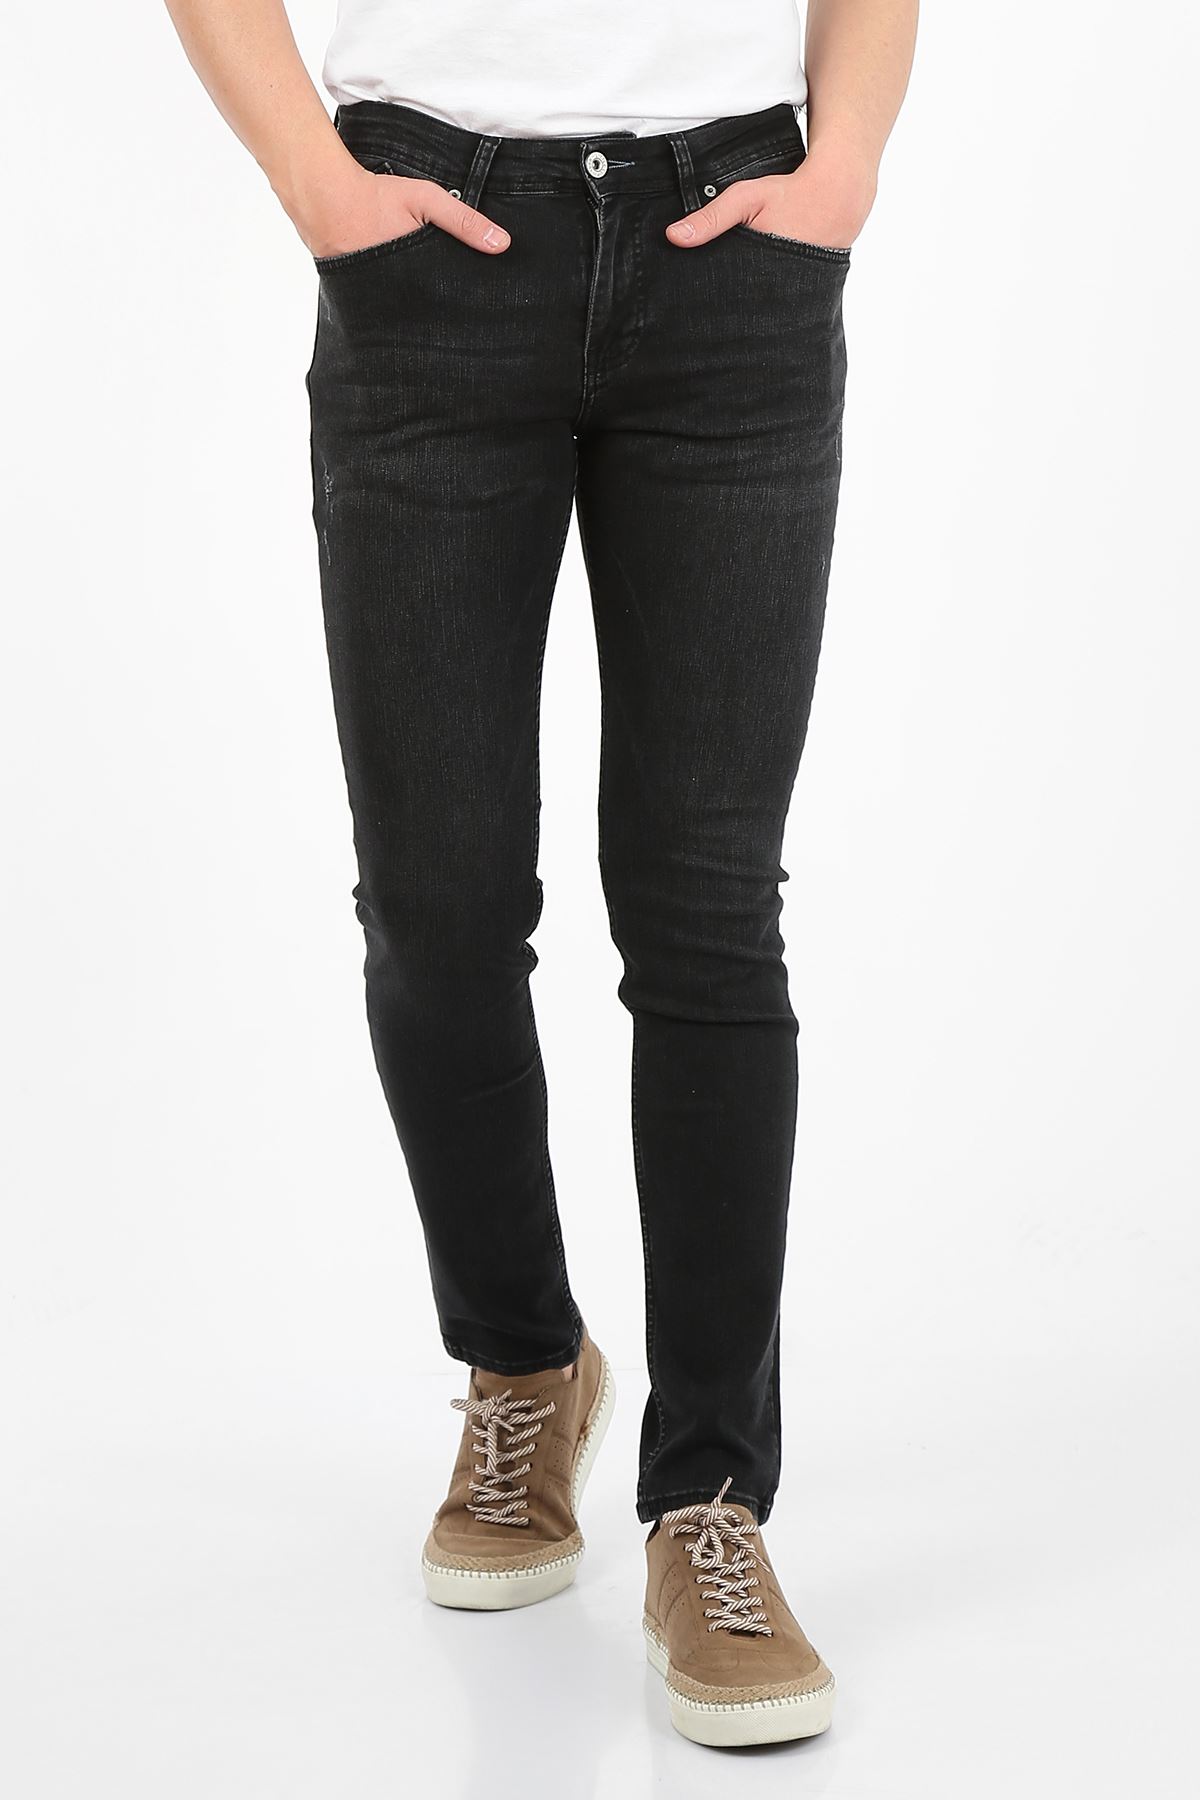 Siyah Slim Fit Fermuarlı Erkek Jeans Pantolon-JONAS